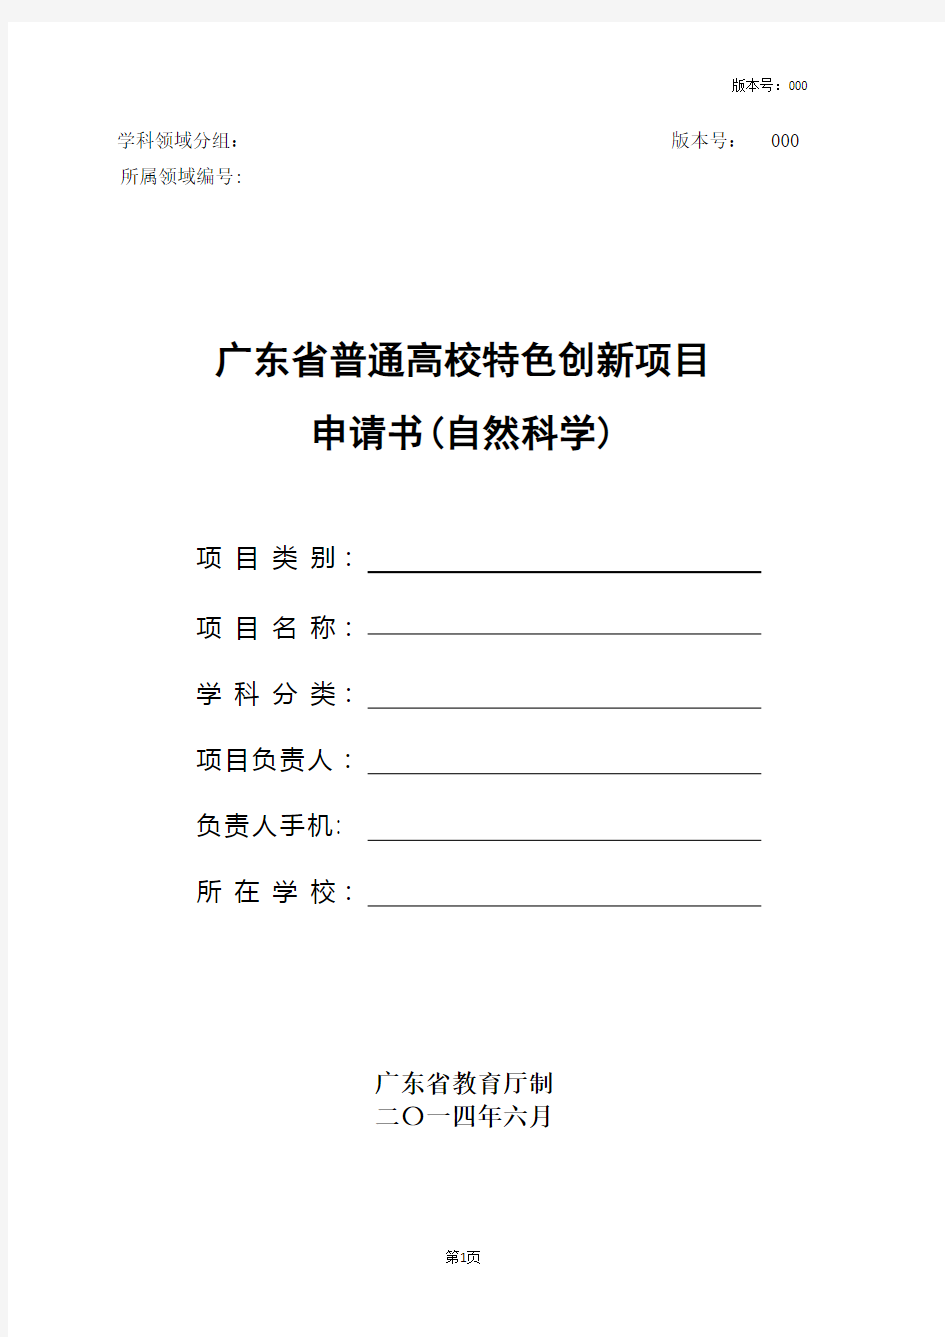 广东省普通高校特色创新类项目申请书(自然科学)